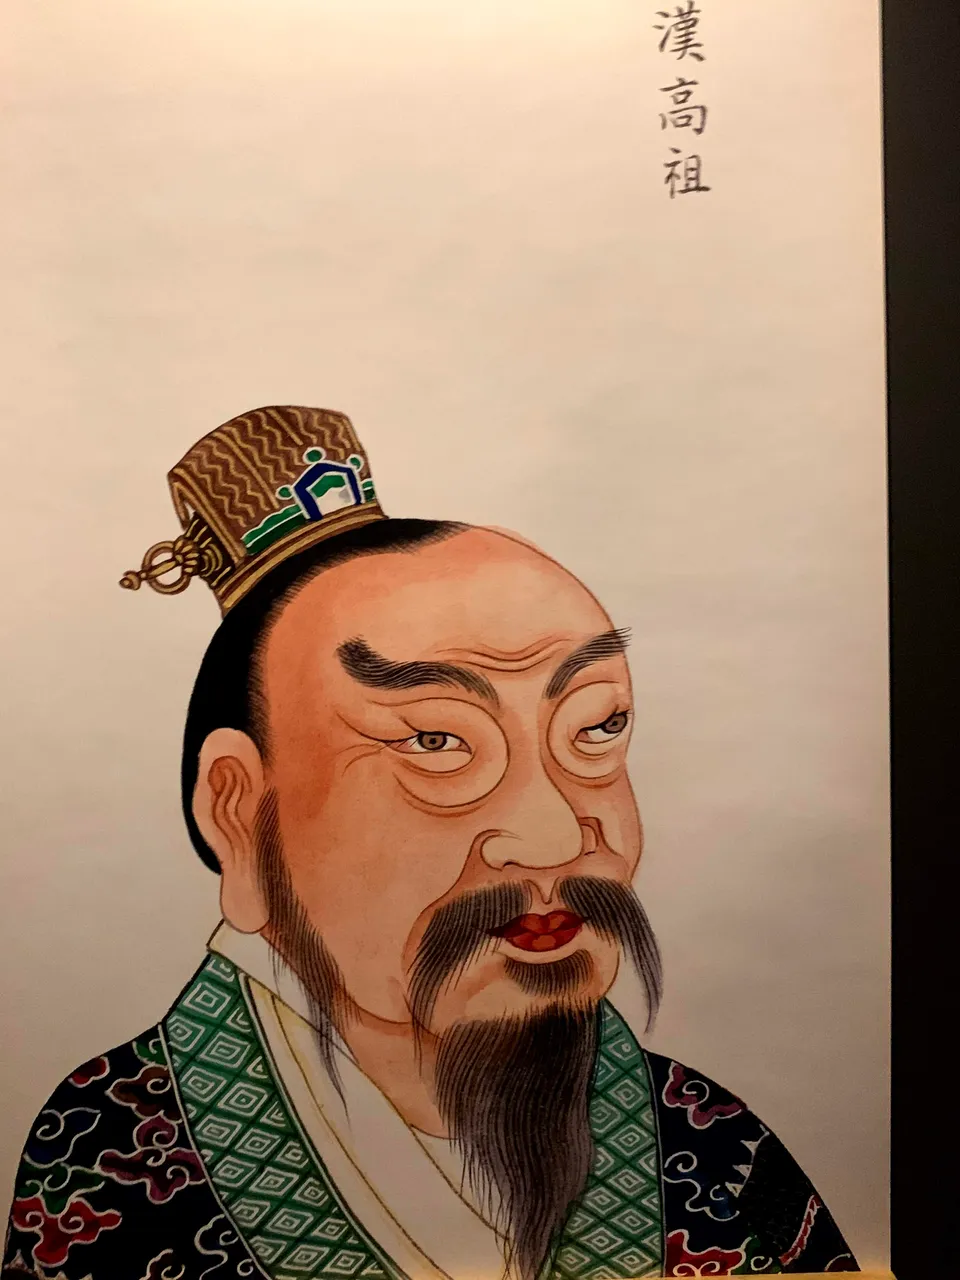 Han Emperor / El emperador de Han